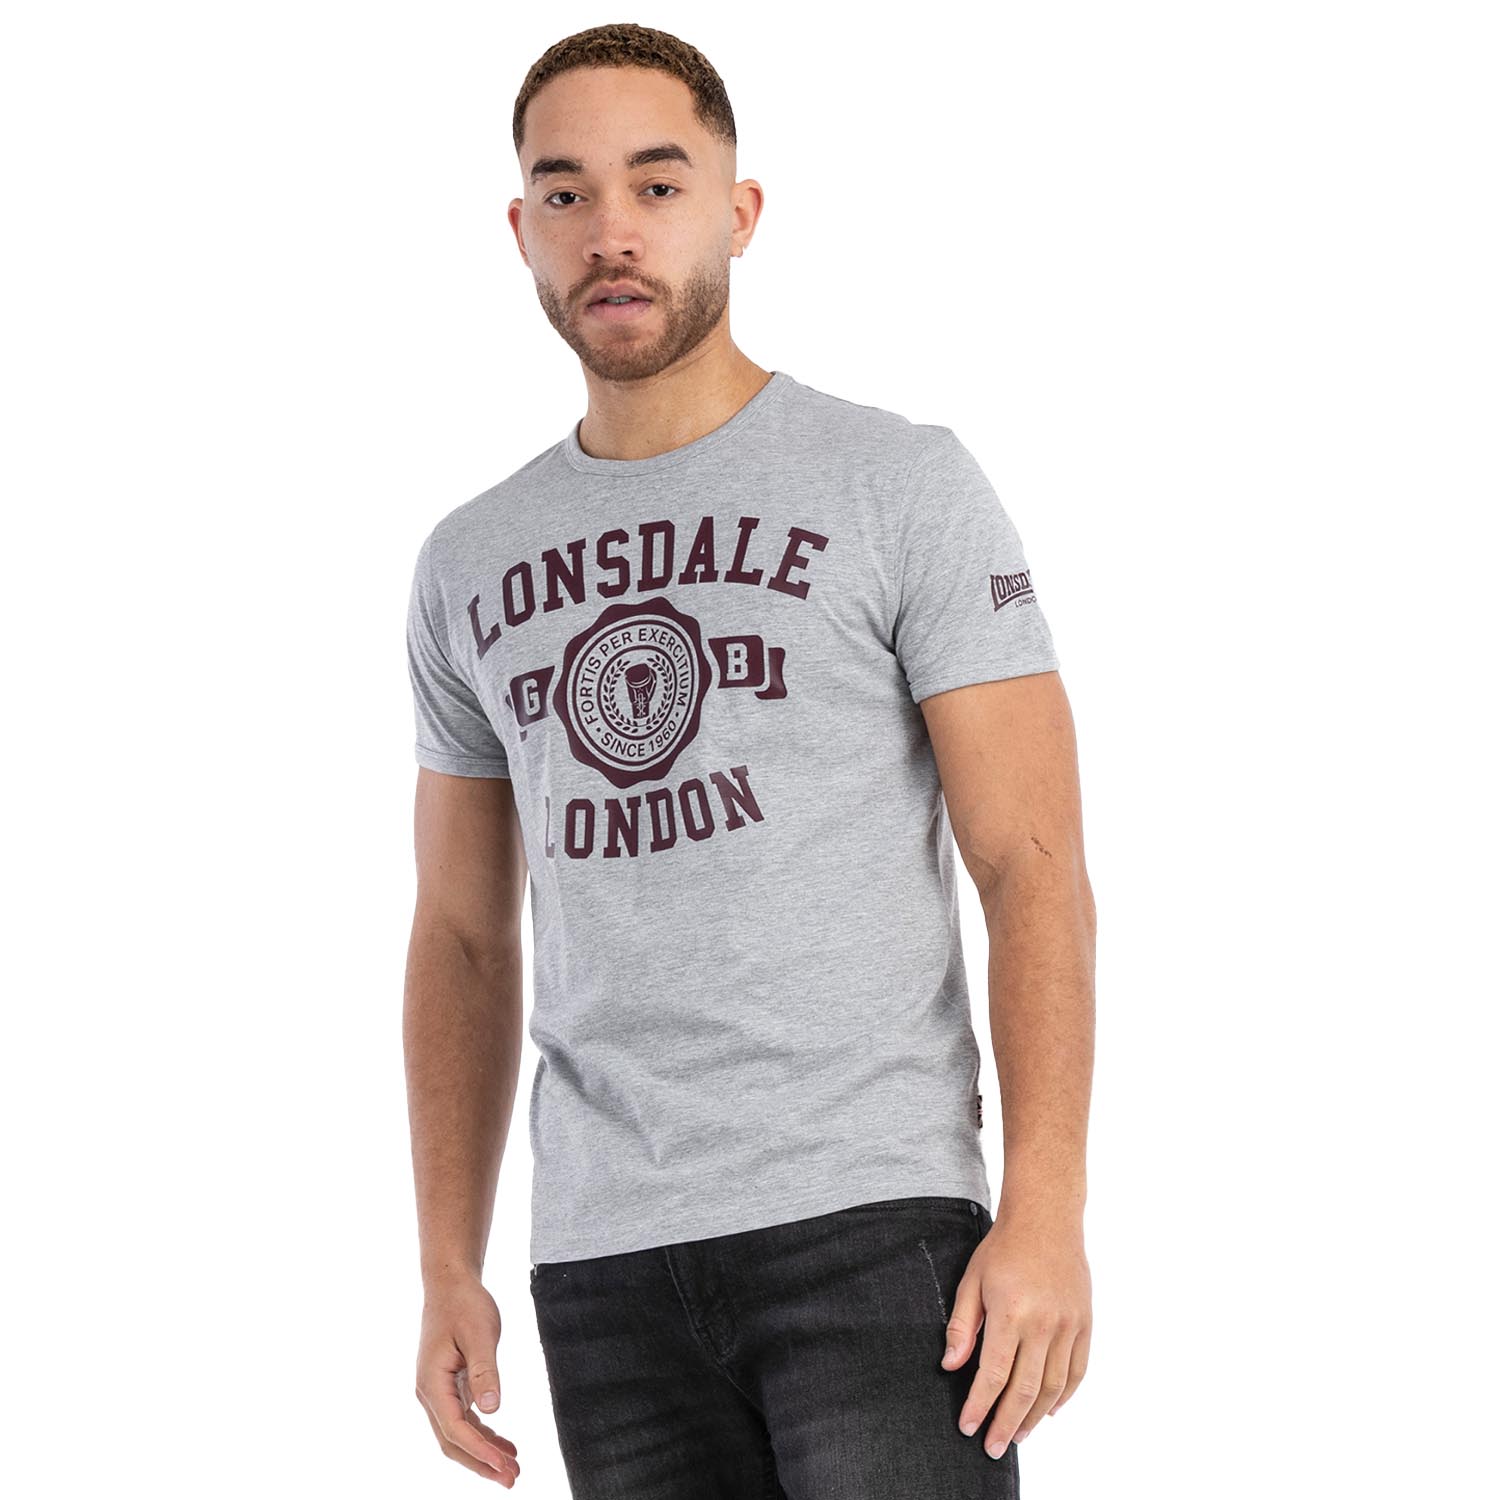 Lonsdale T-Shirt, Murrister, grau